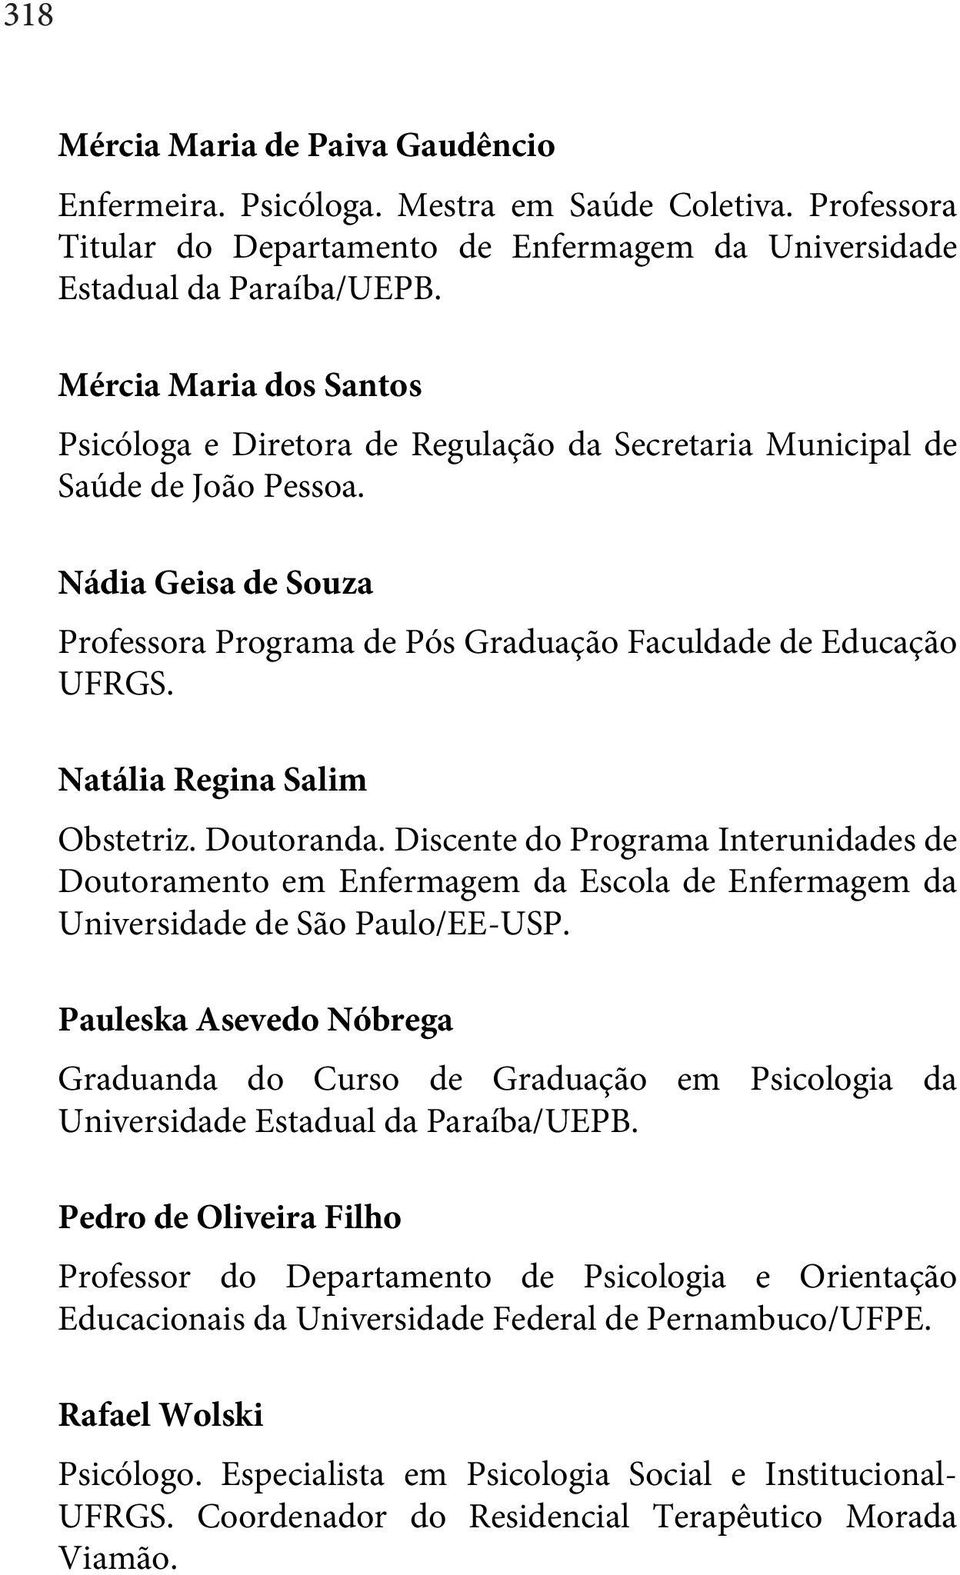 Natália Regina Salim Obstetriz. Doutoranda. Discente do Programa Interunidades de Doutoramento em Enfermagem da Escola de Enfermagem da Universidade de São Paulo/EE-USP.